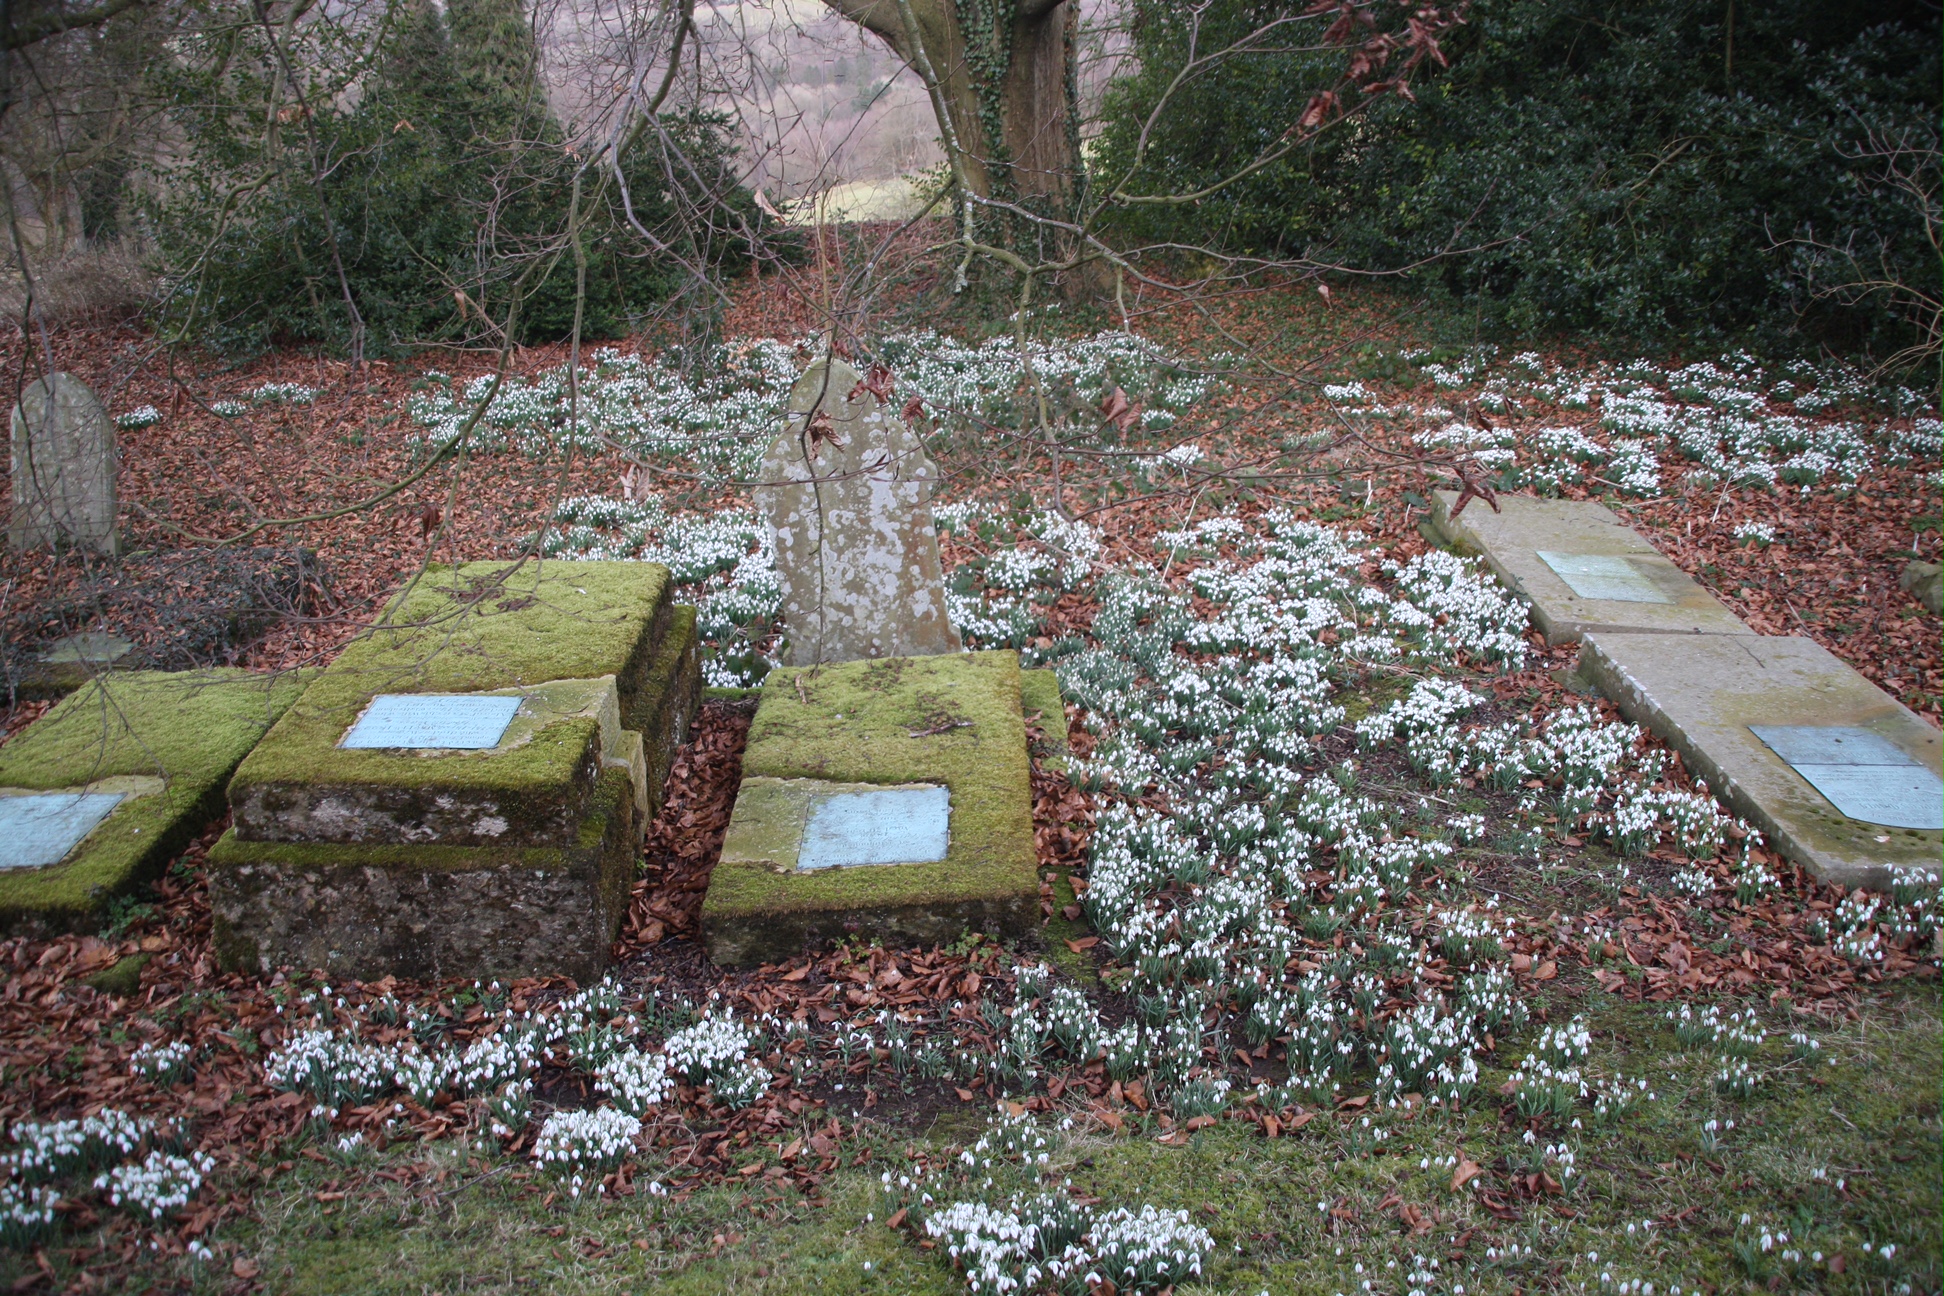 Snowdrops amongst the grave stones, St Andrew's, Miserden.